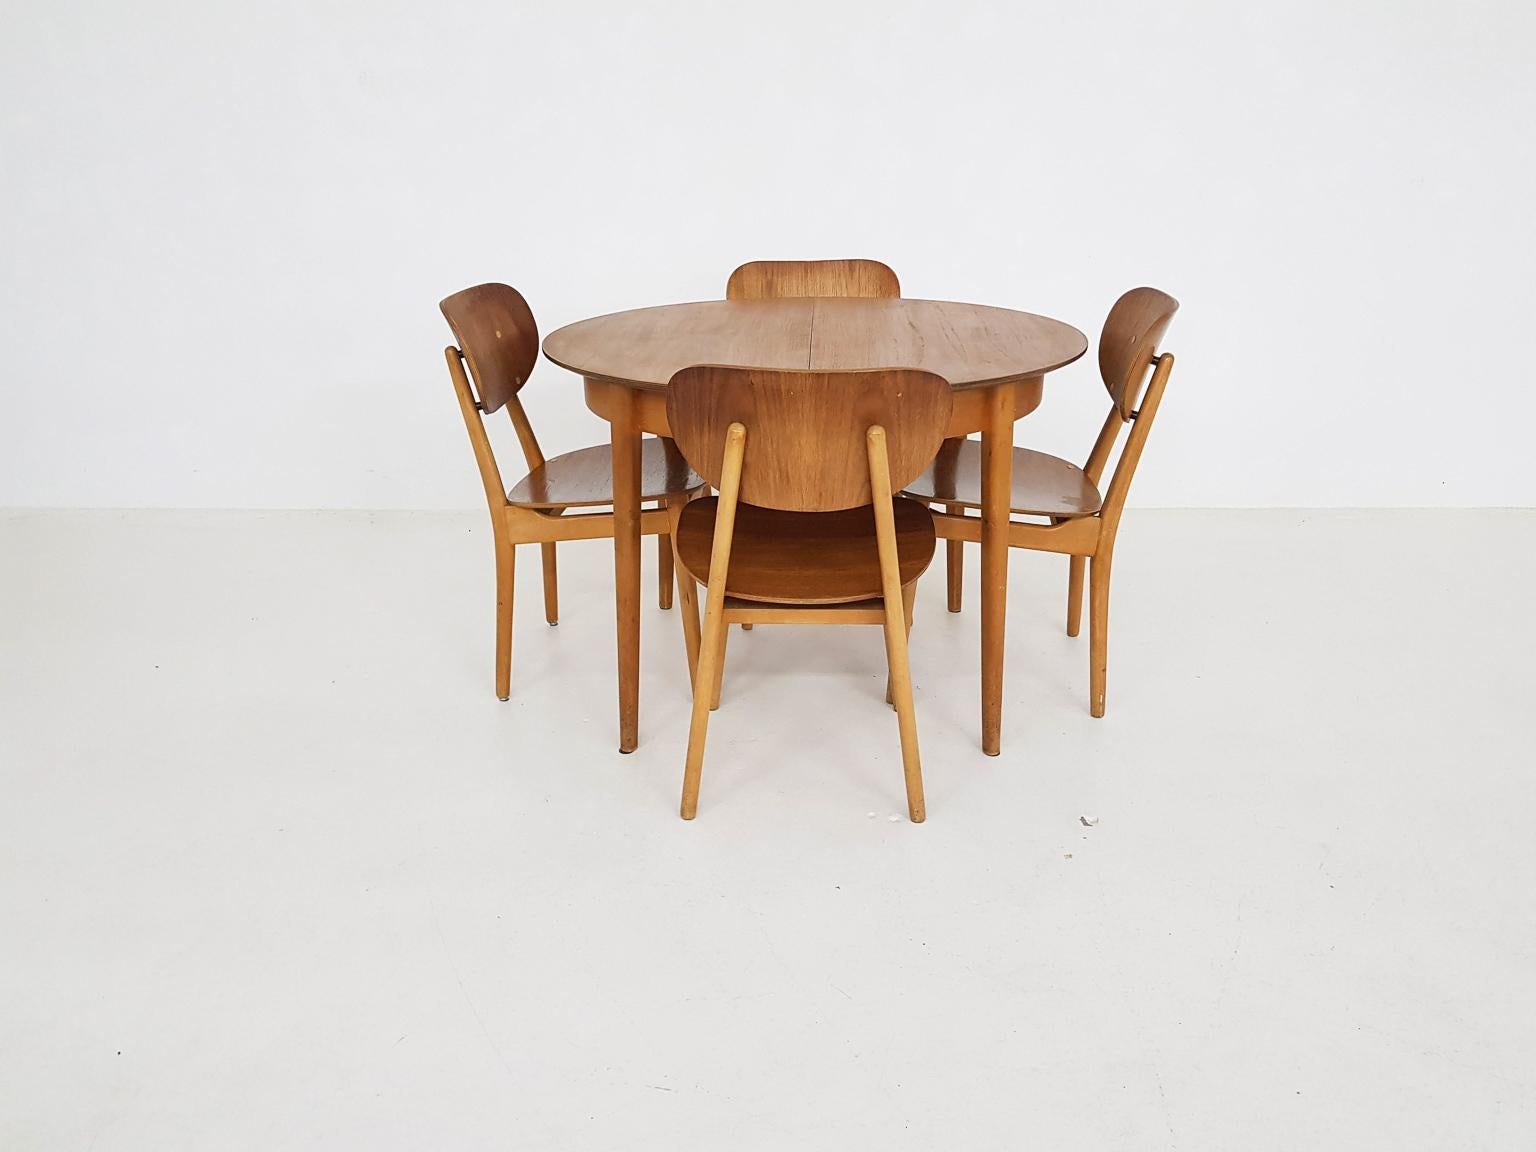 Esstischset mit Tisch TB35 und Stuhl SB11, Cees Braakman für Pastoe, Niederländisch 1950er Jahre (Mitte des 20. Jahrhunderts)